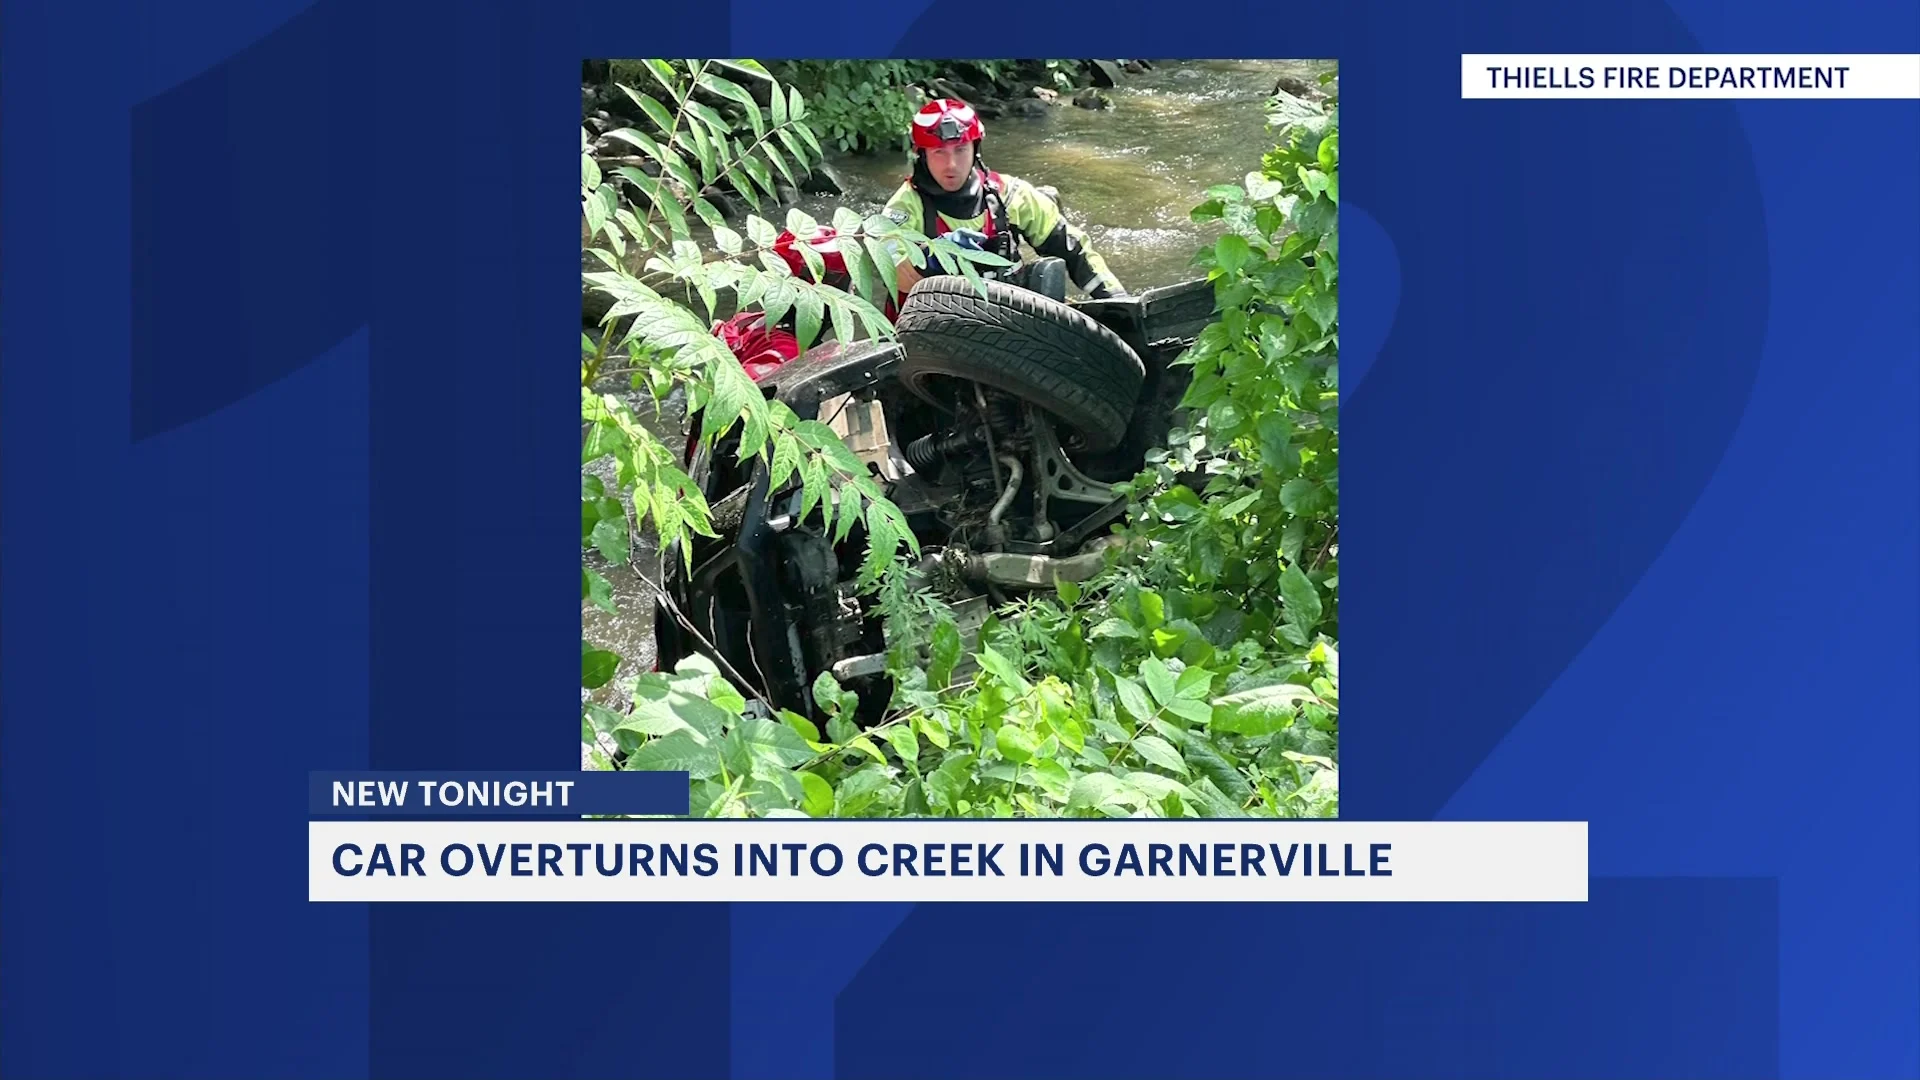 Fire officials: Car overturns into creek in Garnerville